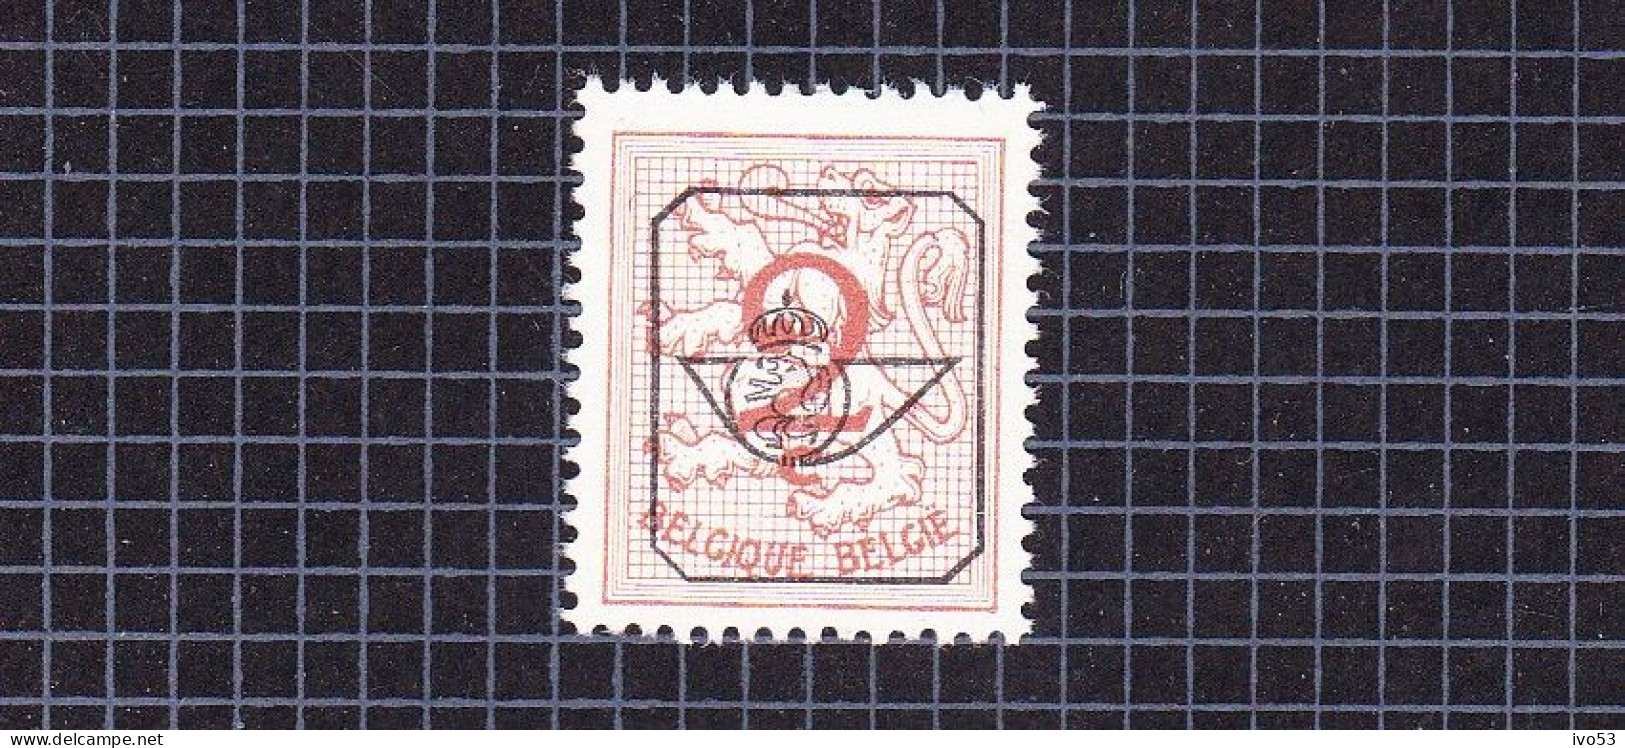 1967 Nr PRE780-P1** Zonder Scharnier:dof Papier.Heraldieke Leeuw:2c.Opdruk Type G. - Typografisch 1951-80 (Cijfer Op Leeuw)